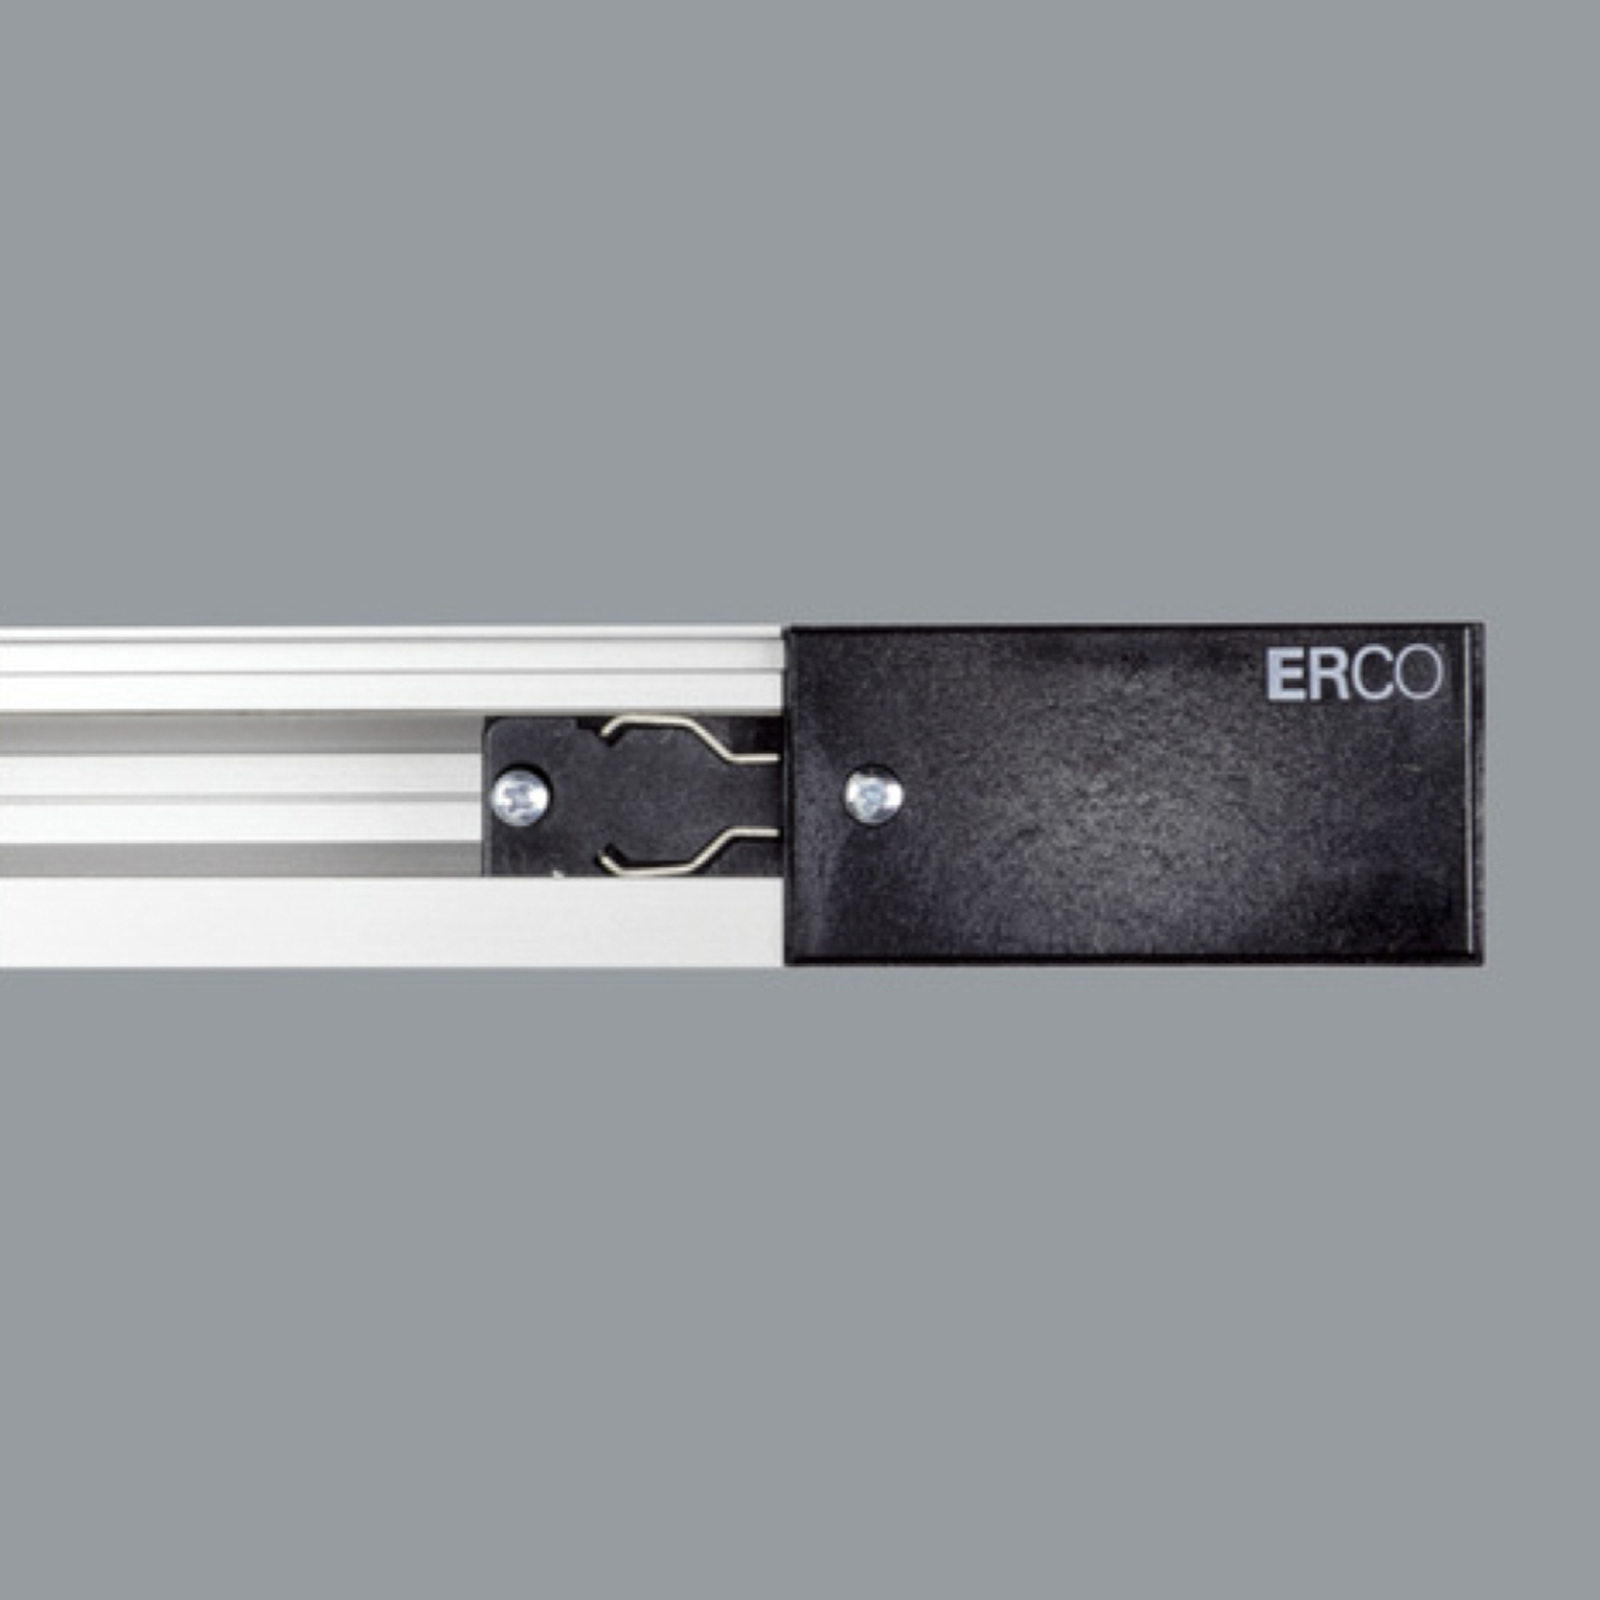 ERCO 3-fas-anslutning skyddsledare höger svart